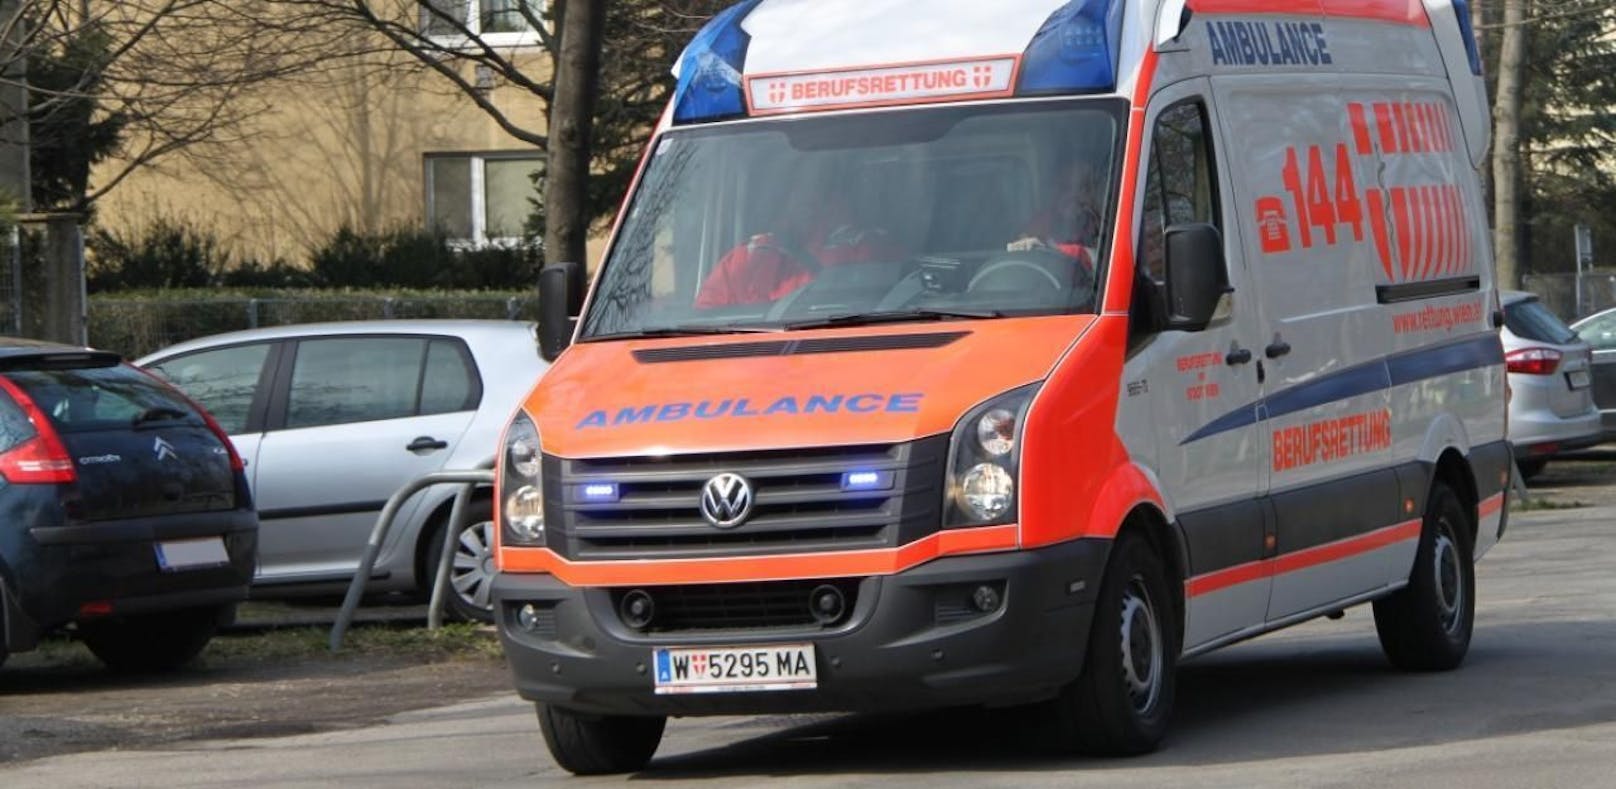 Bei dem Unfall in Wien-Donaustadt wurden drei Menschen verletzt.